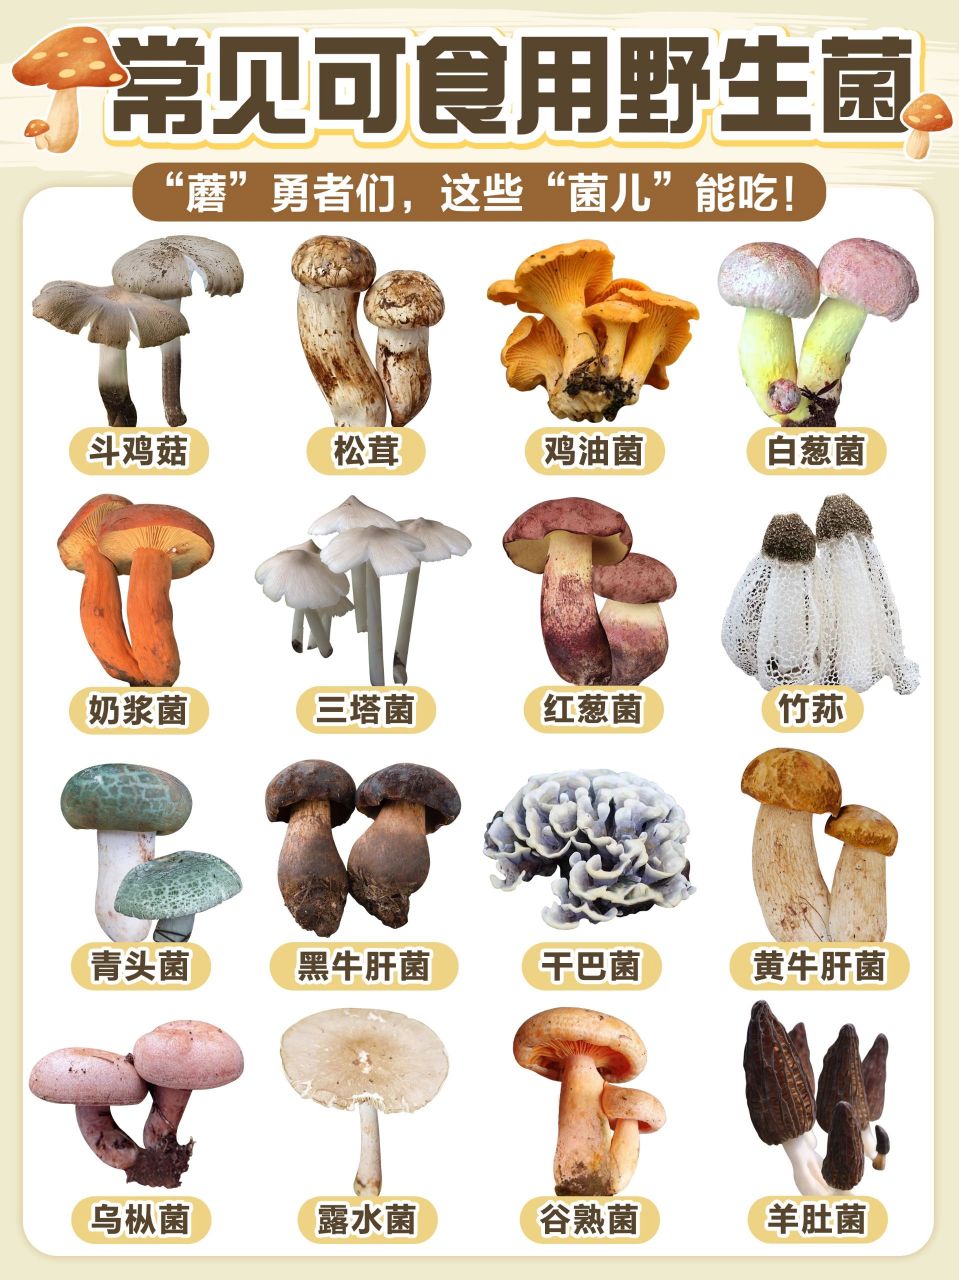 菇类 名字图片